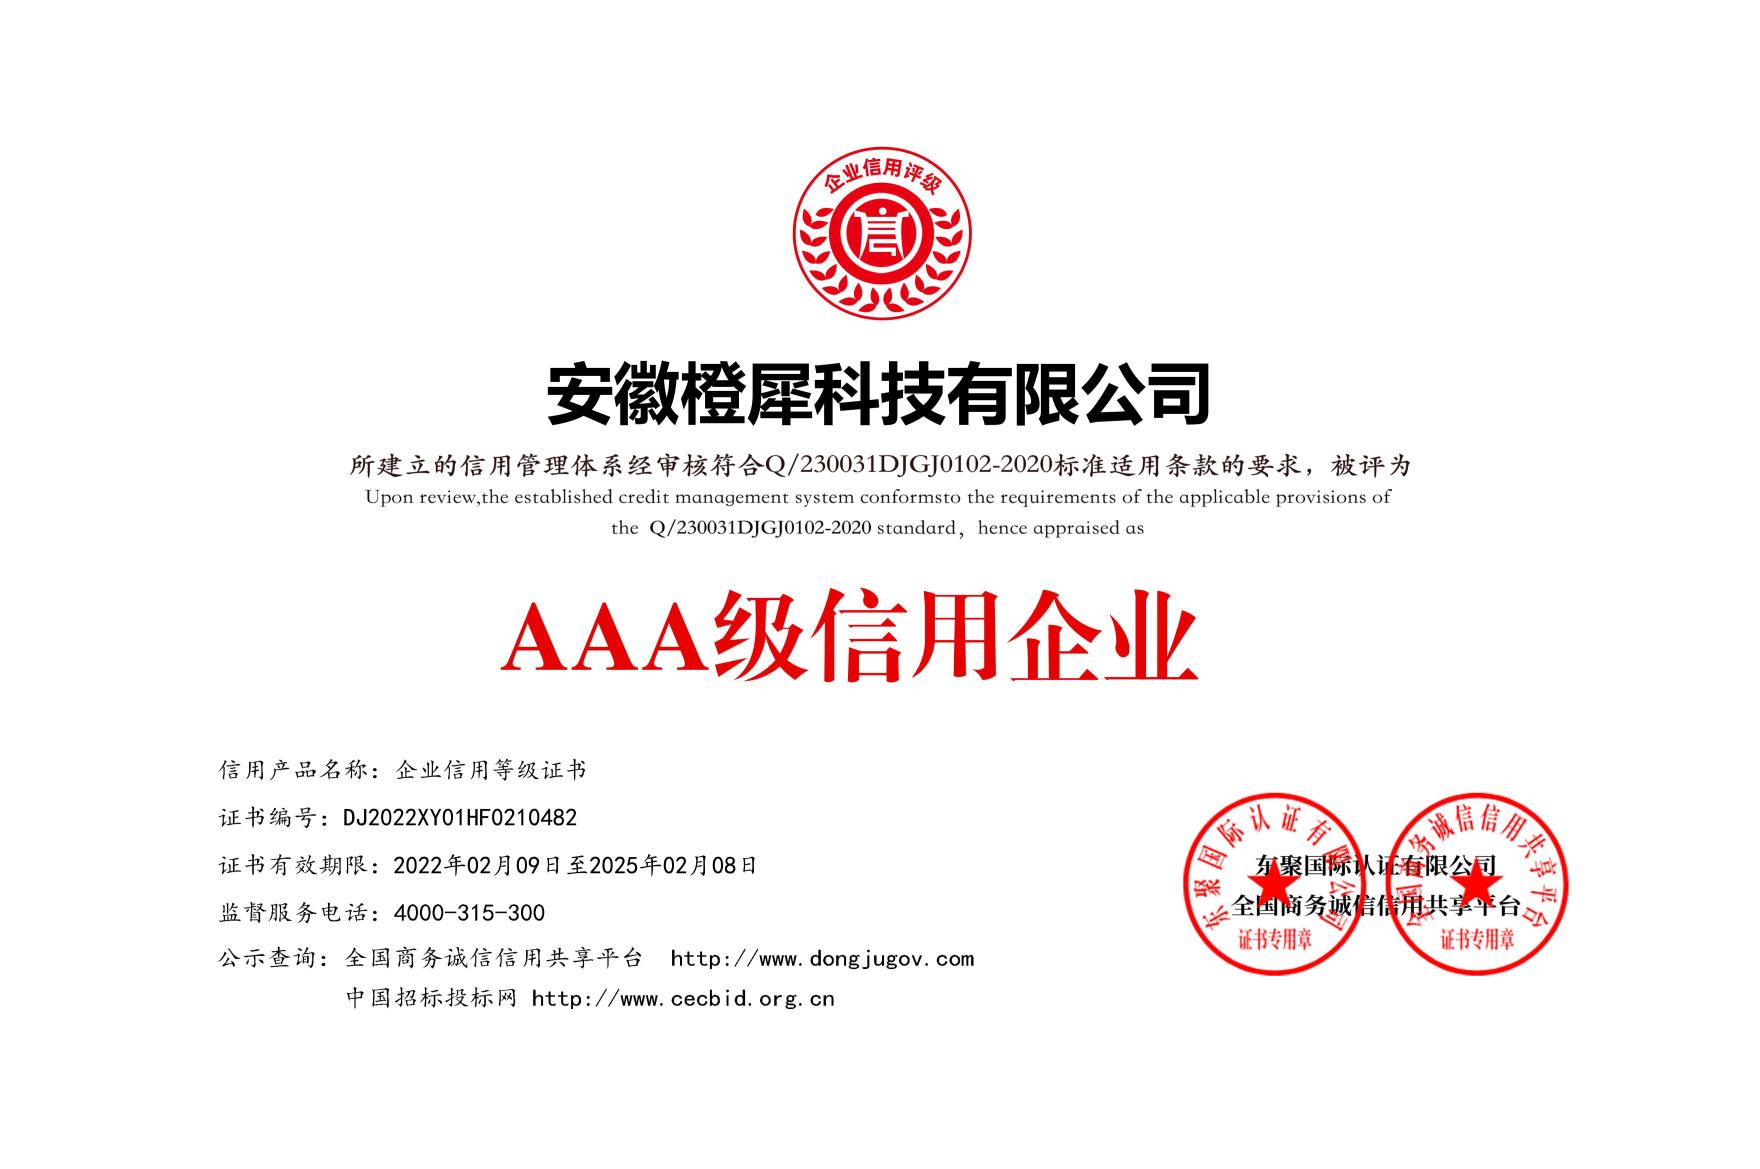 荣获AAA级信用企业等级证书